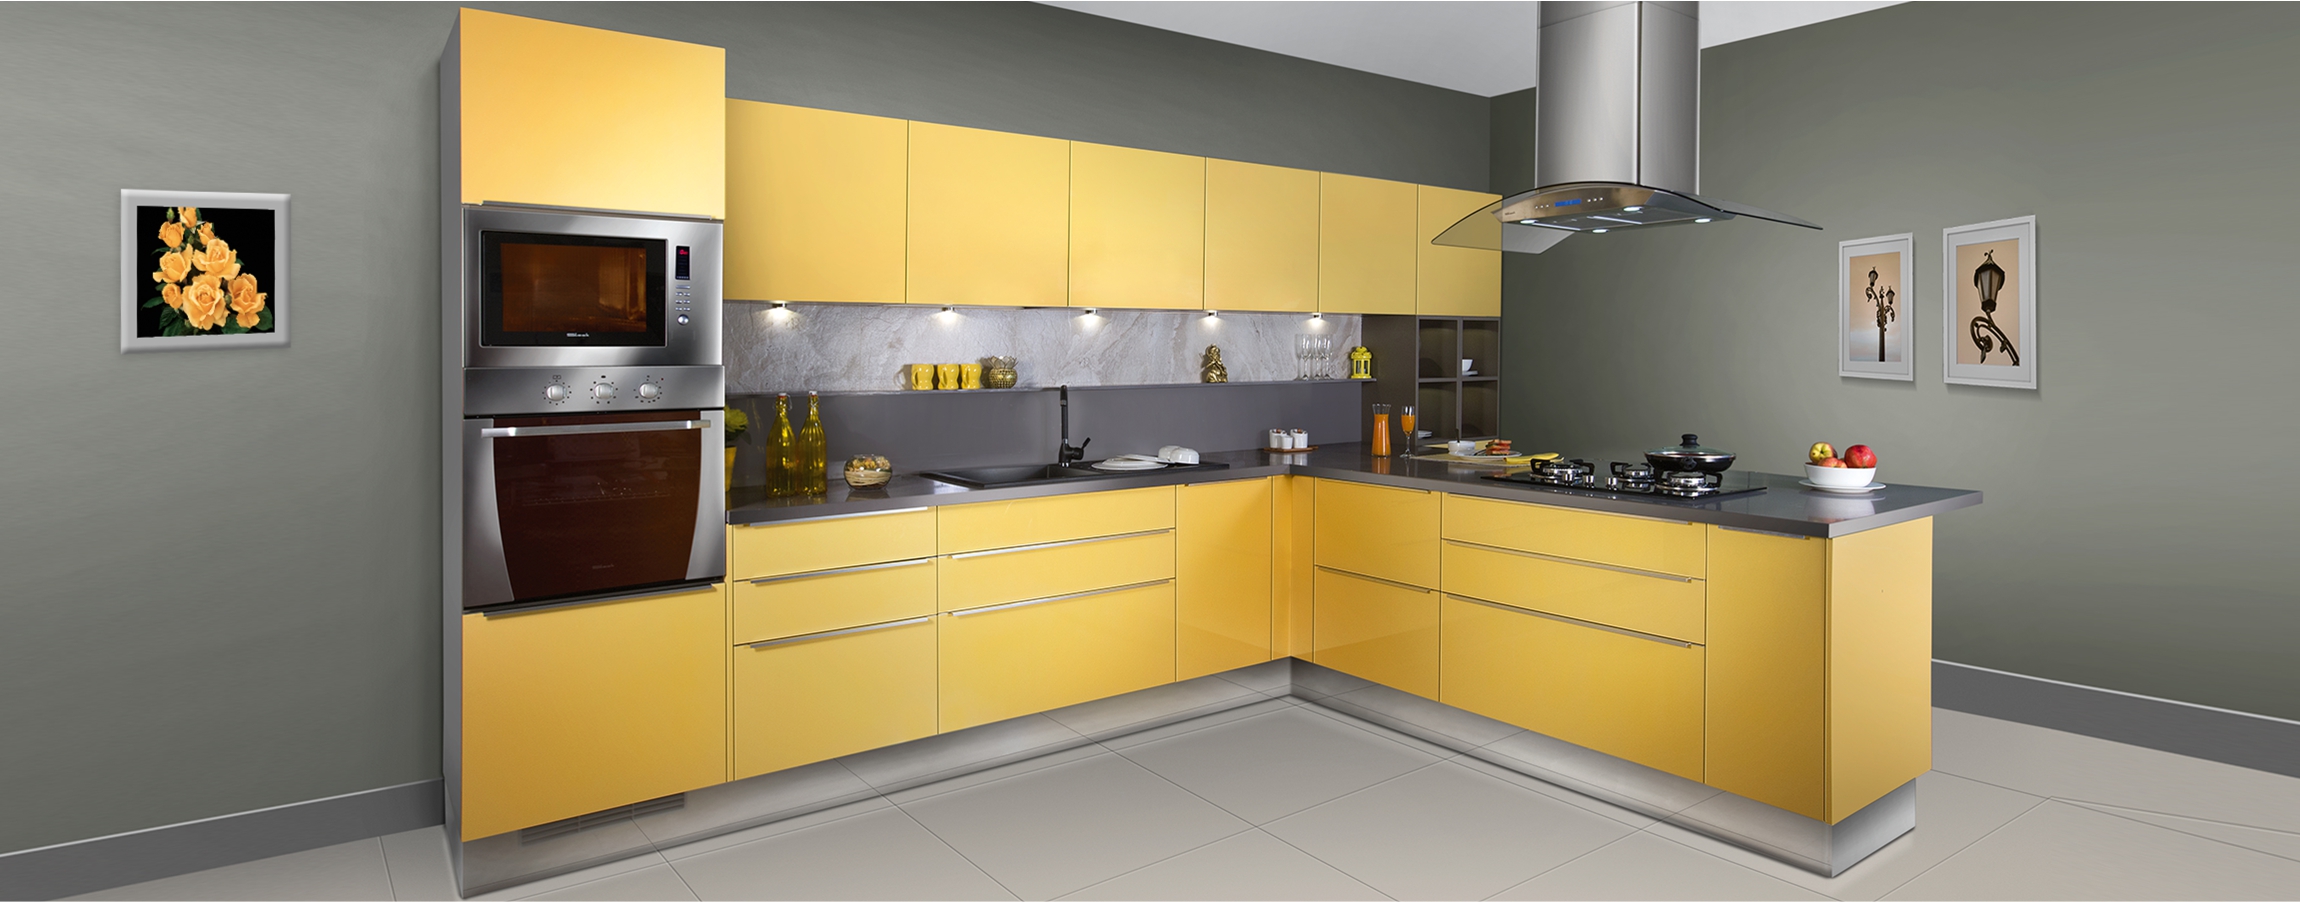 Glossy Sleek Kitchen Designs